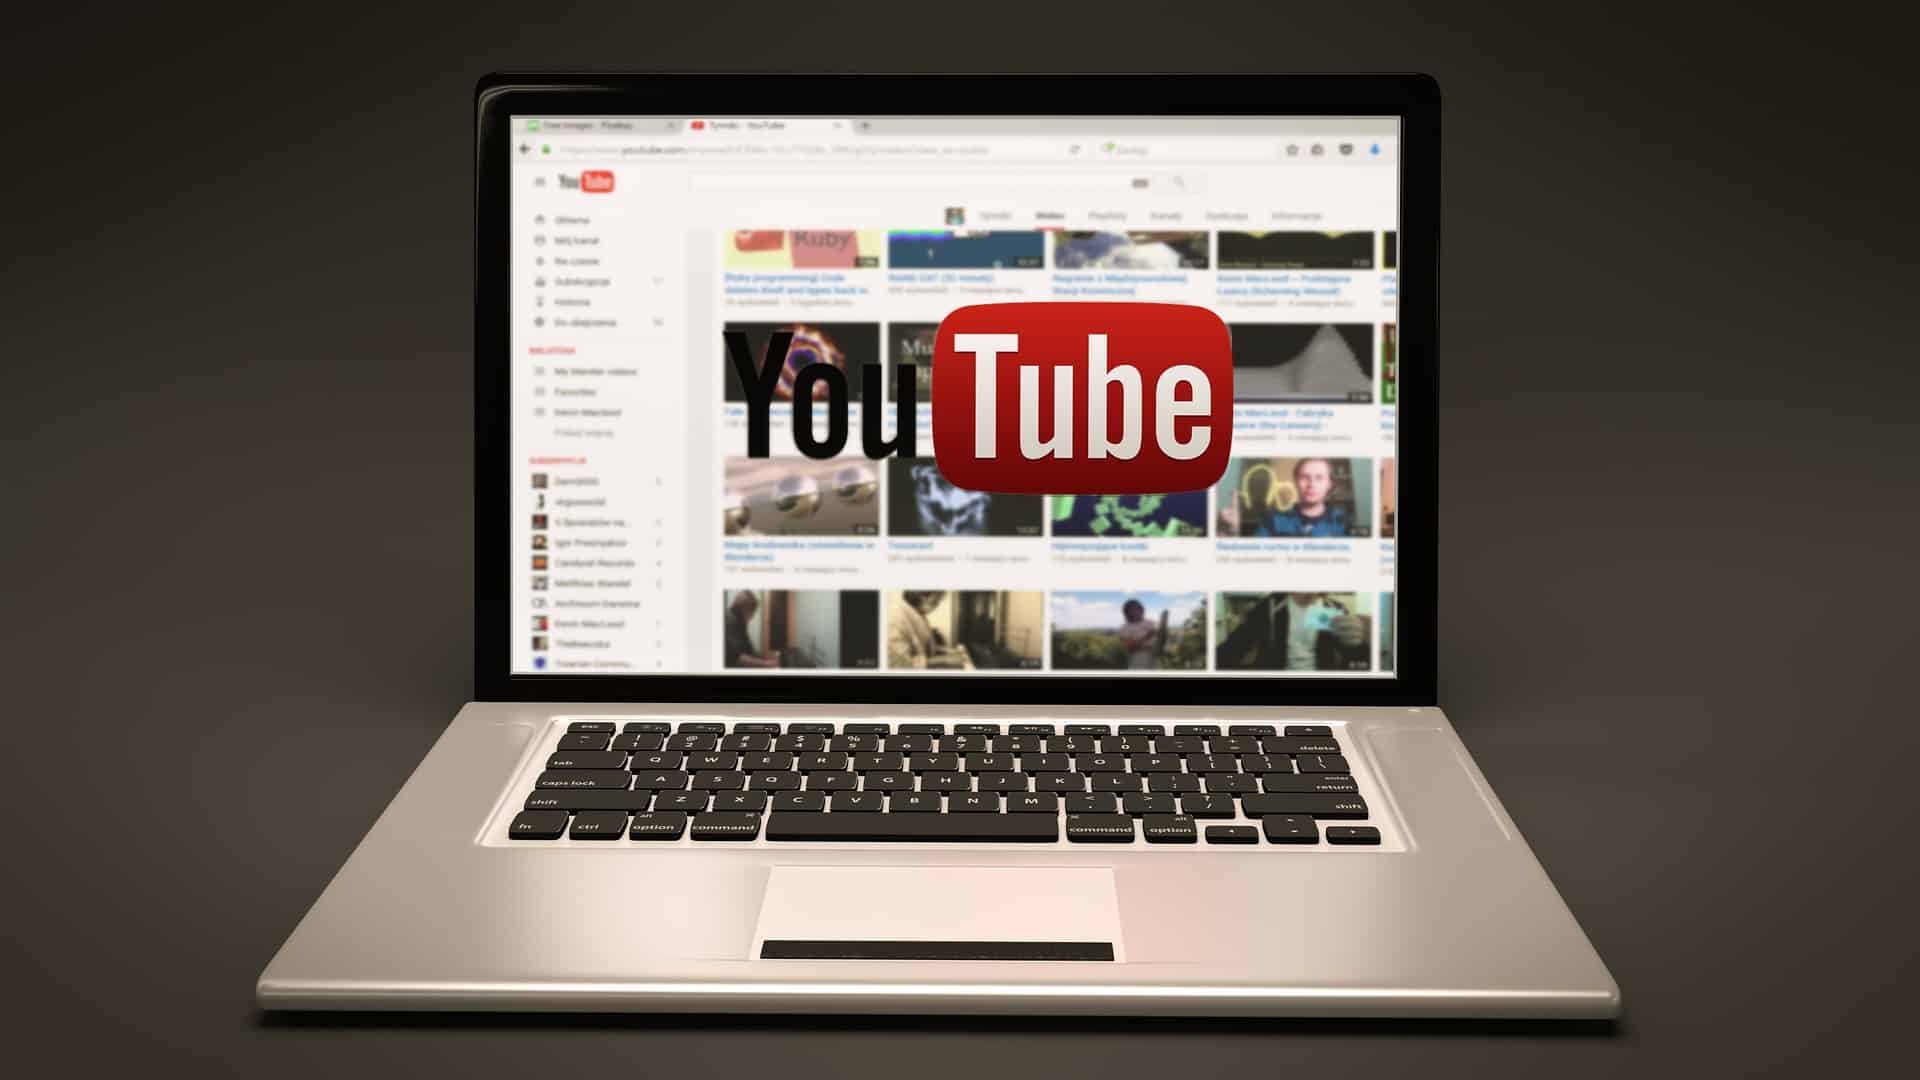 Youtube face schimbări la design și adaugă funcții noi/ Pixabay